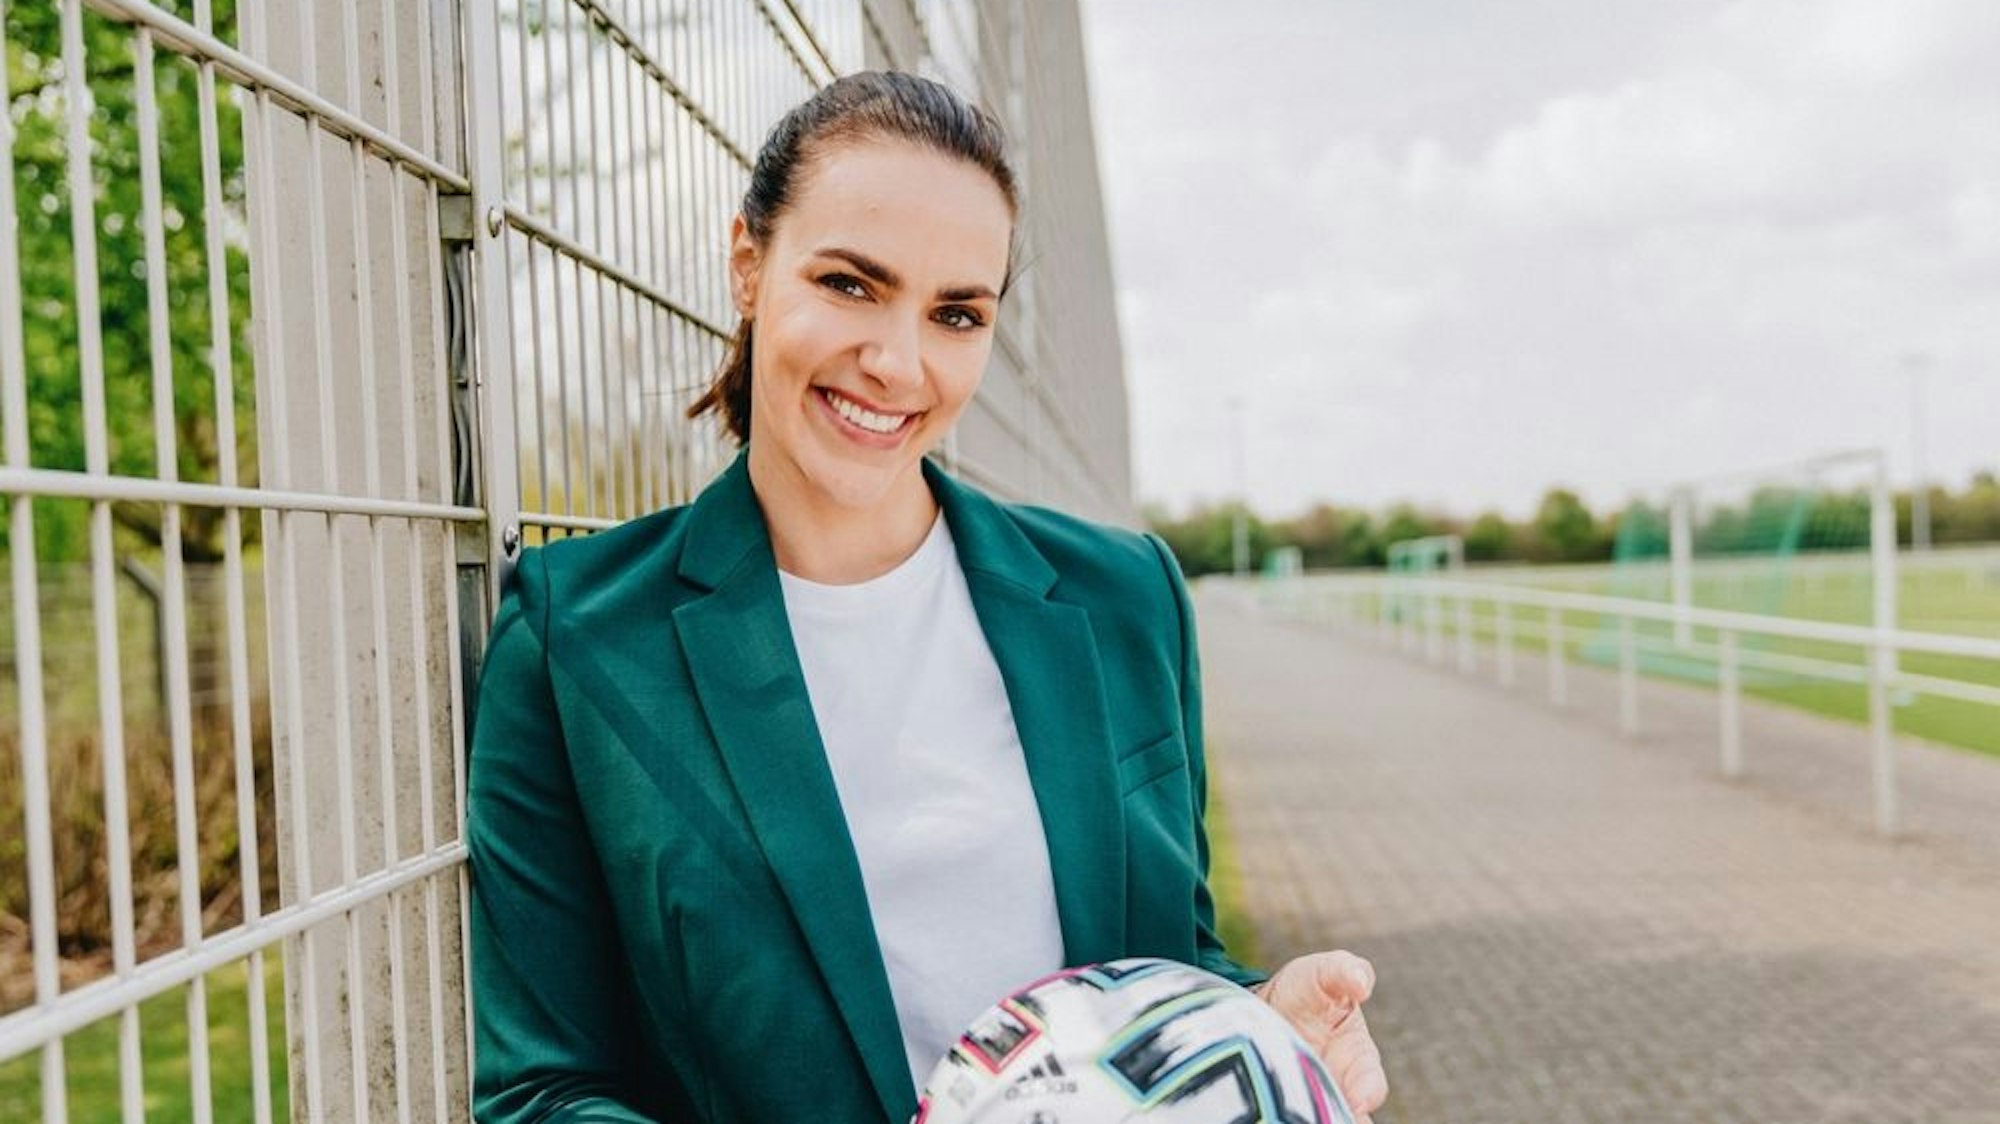 Esther Sedlaczek hält lachend einen Fußball in der Hand.